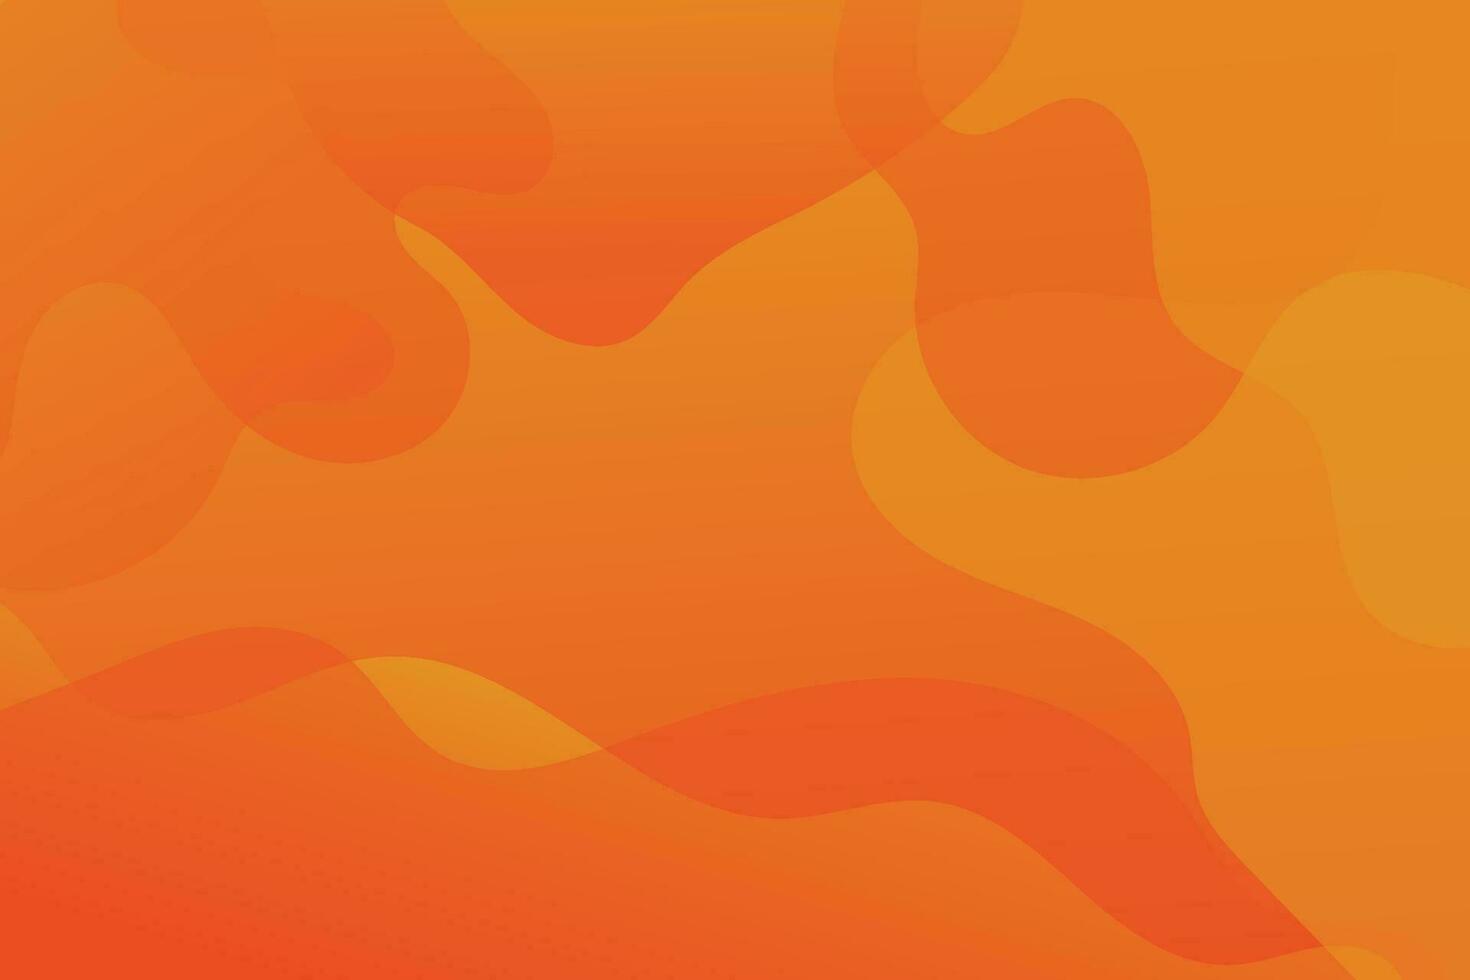 vloeistof kleur achtergrond ontwerp. oranje elementen met vloeistof helling vector illustratie